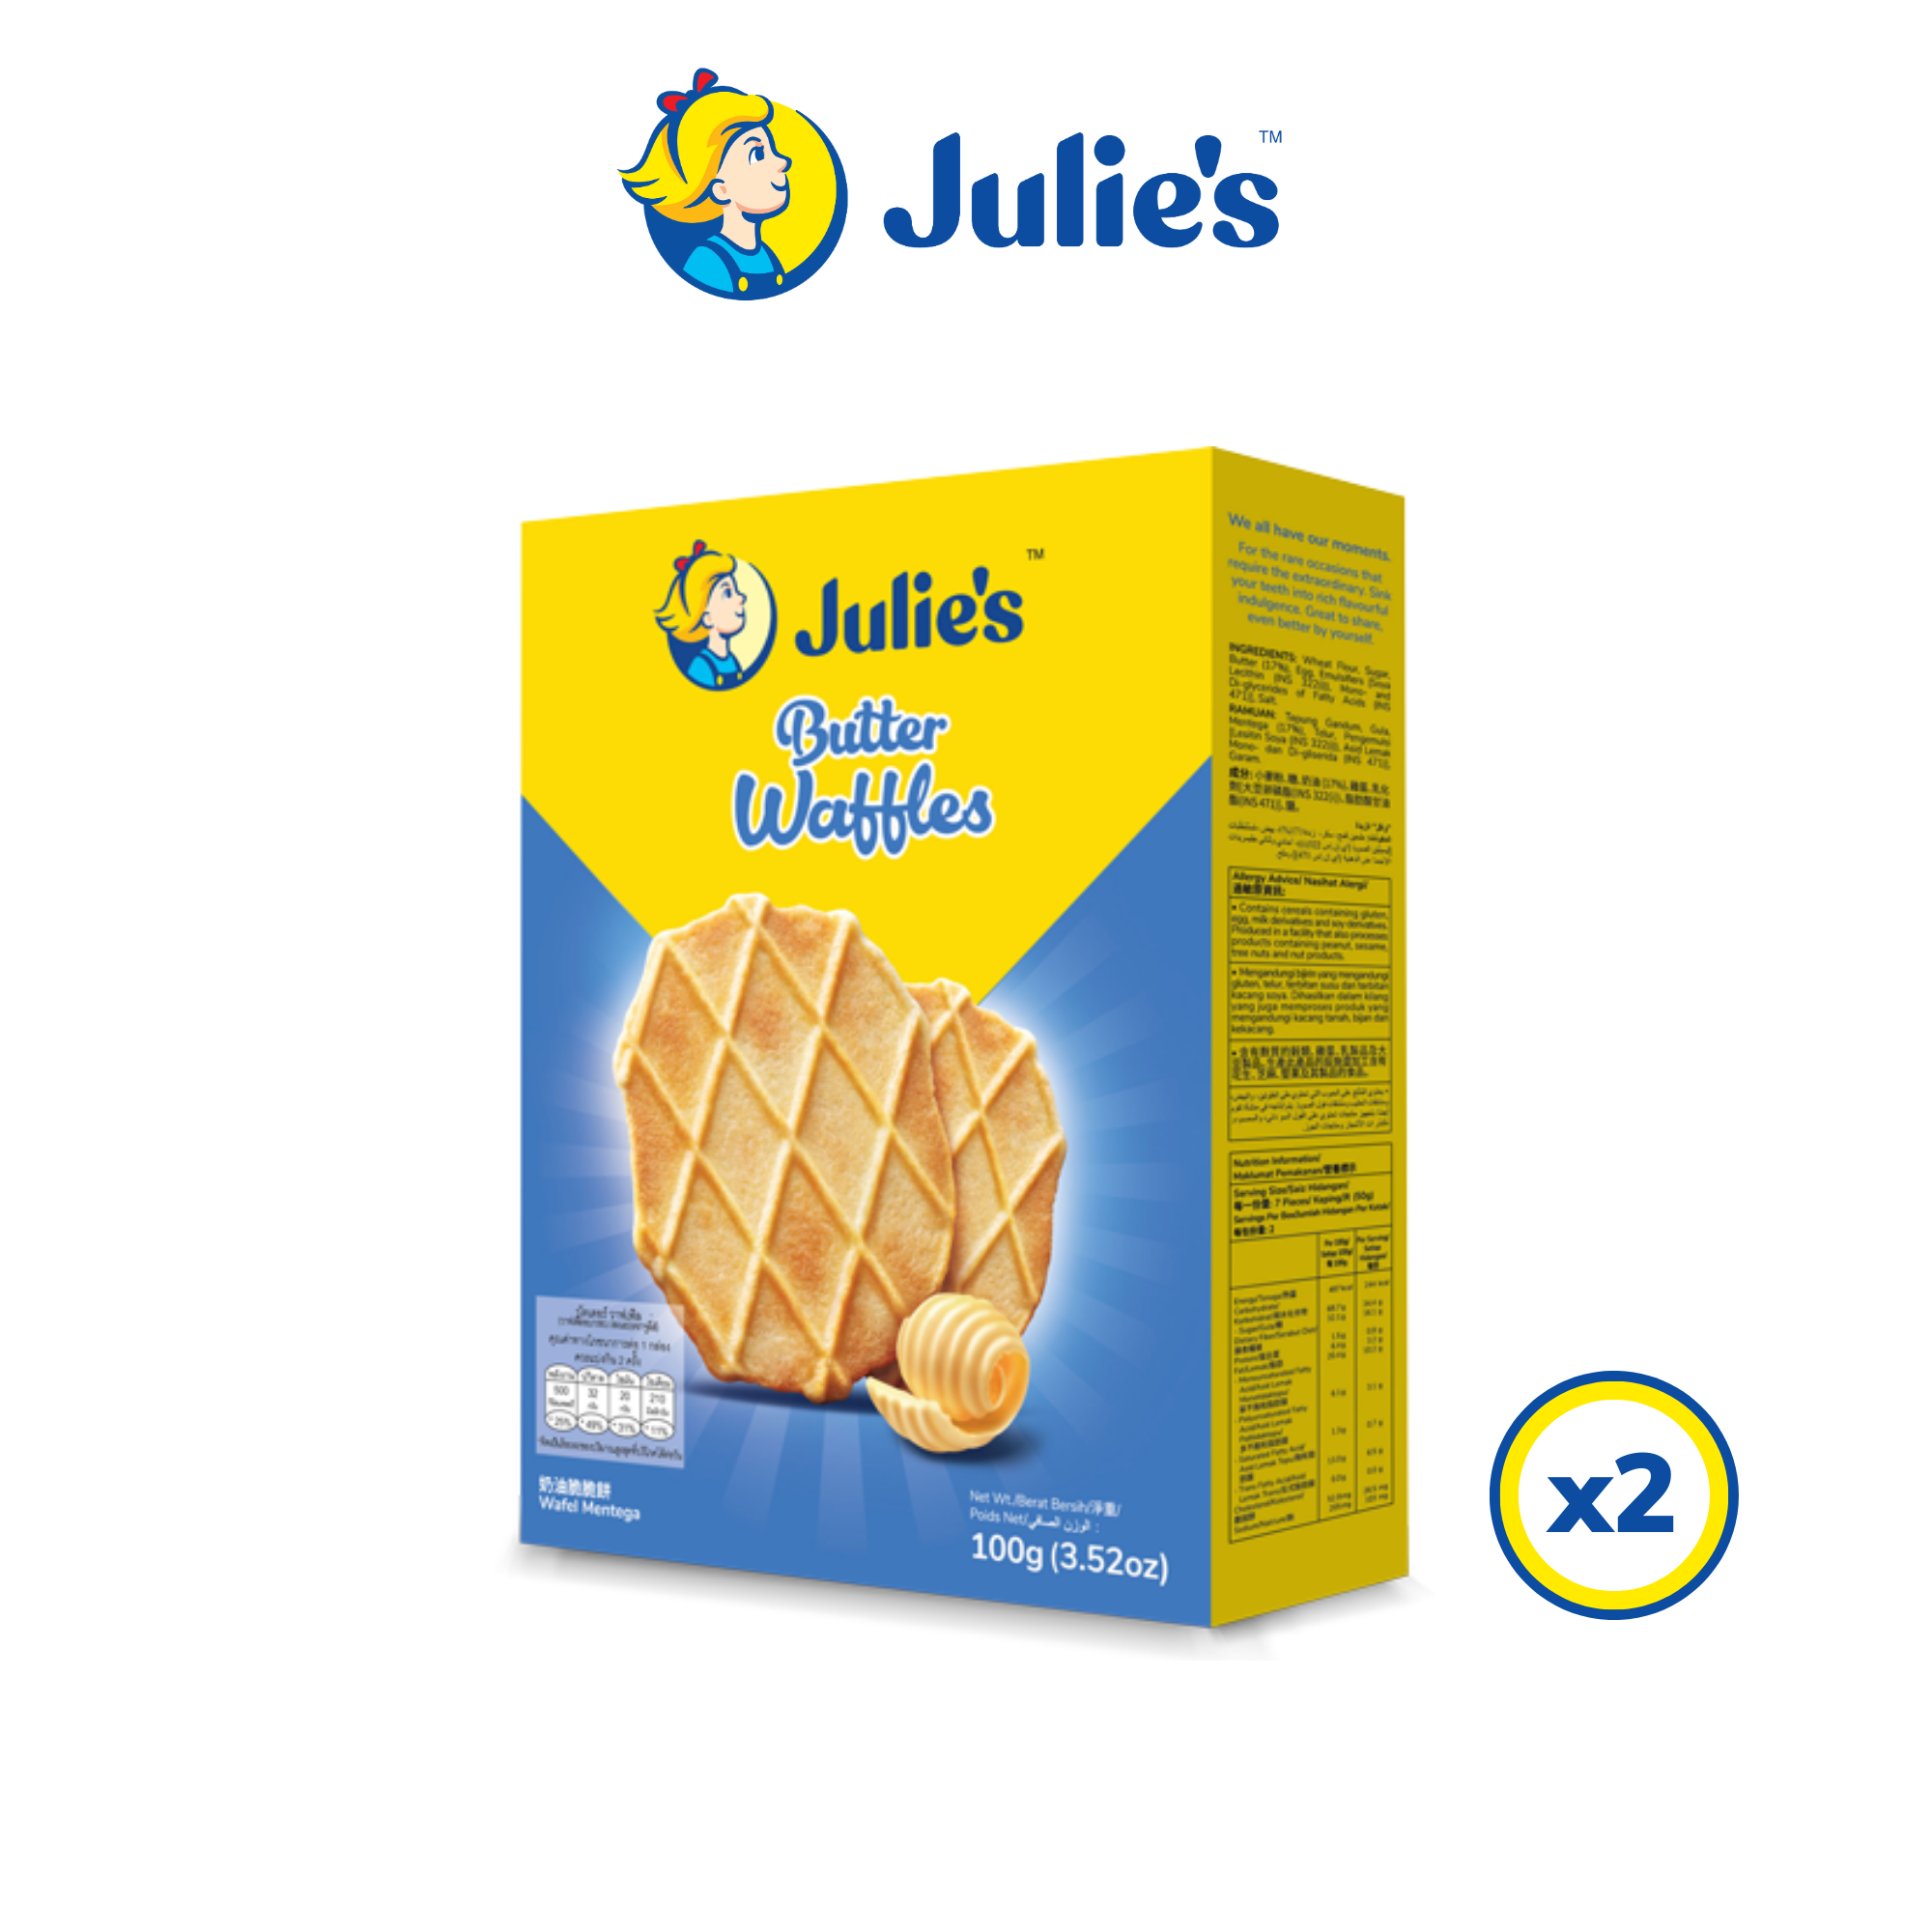 Julie’s Butter Waffles 100g x 2 packs